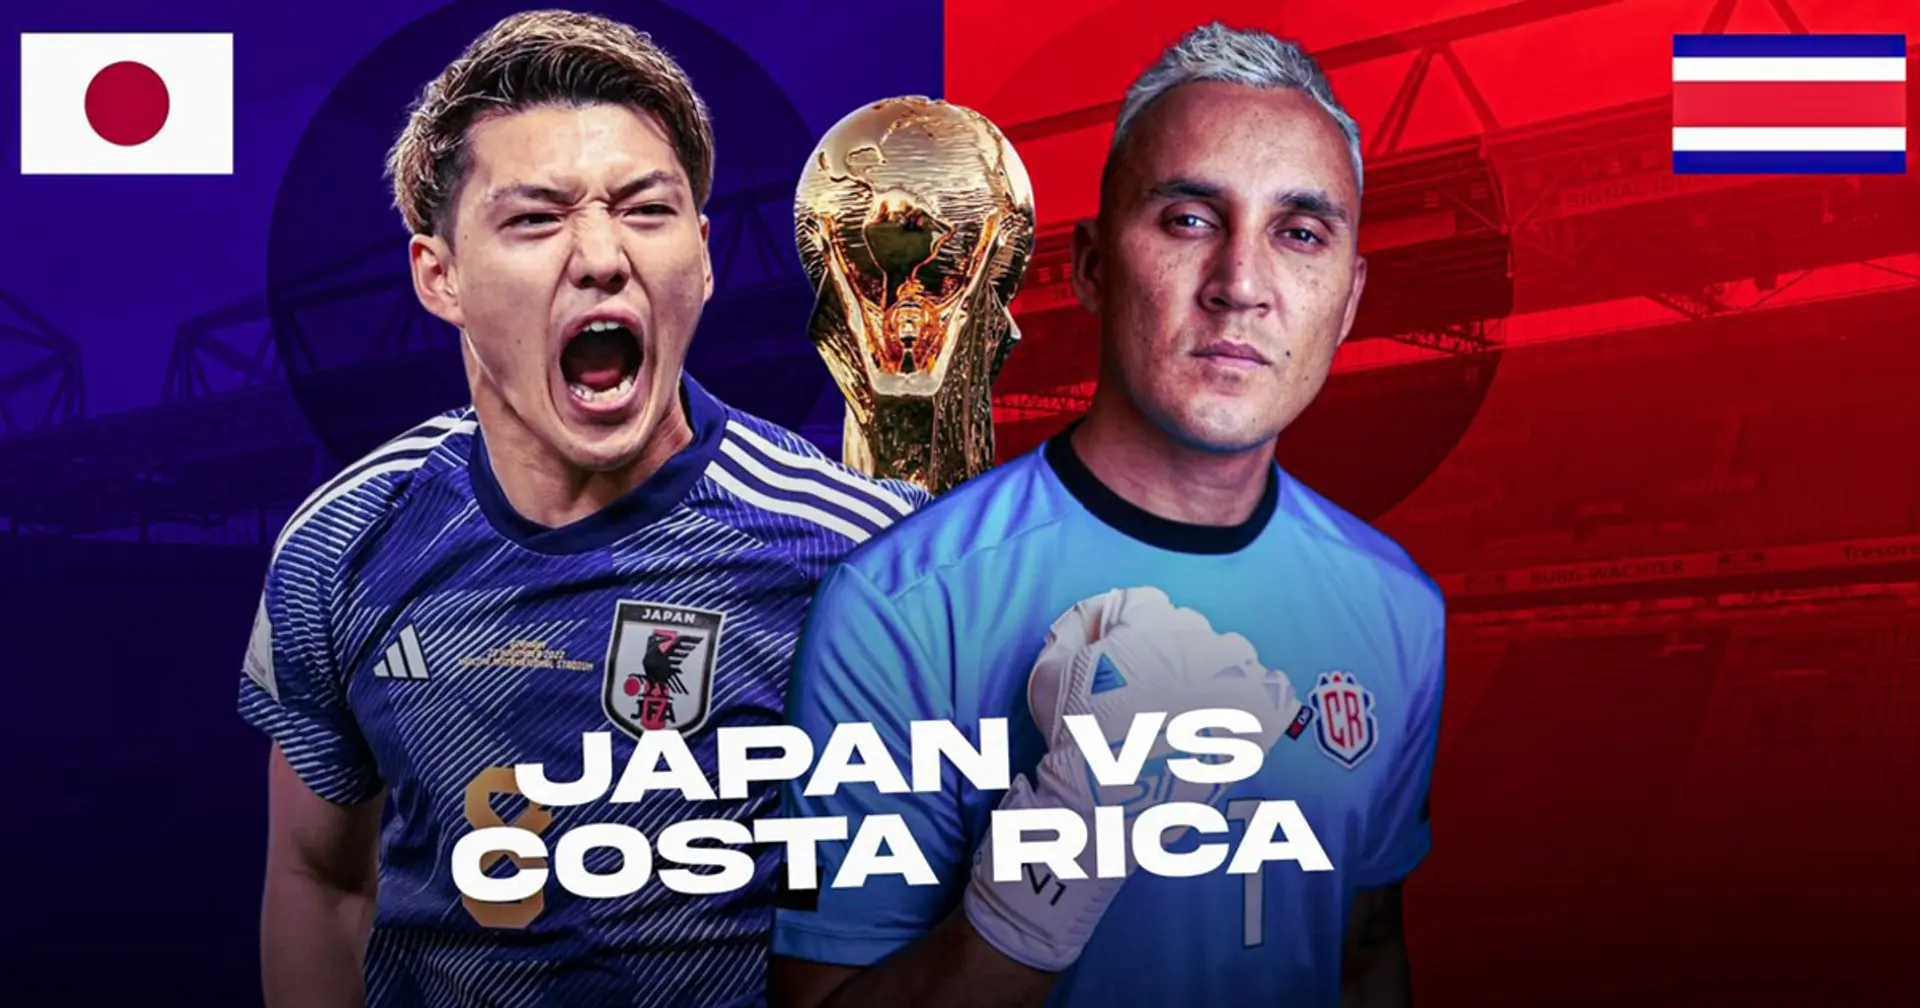 Japón vs Costa Rica: se revelan las alineaciones oficiales de los equipos para el choque de la Copa del Mundo